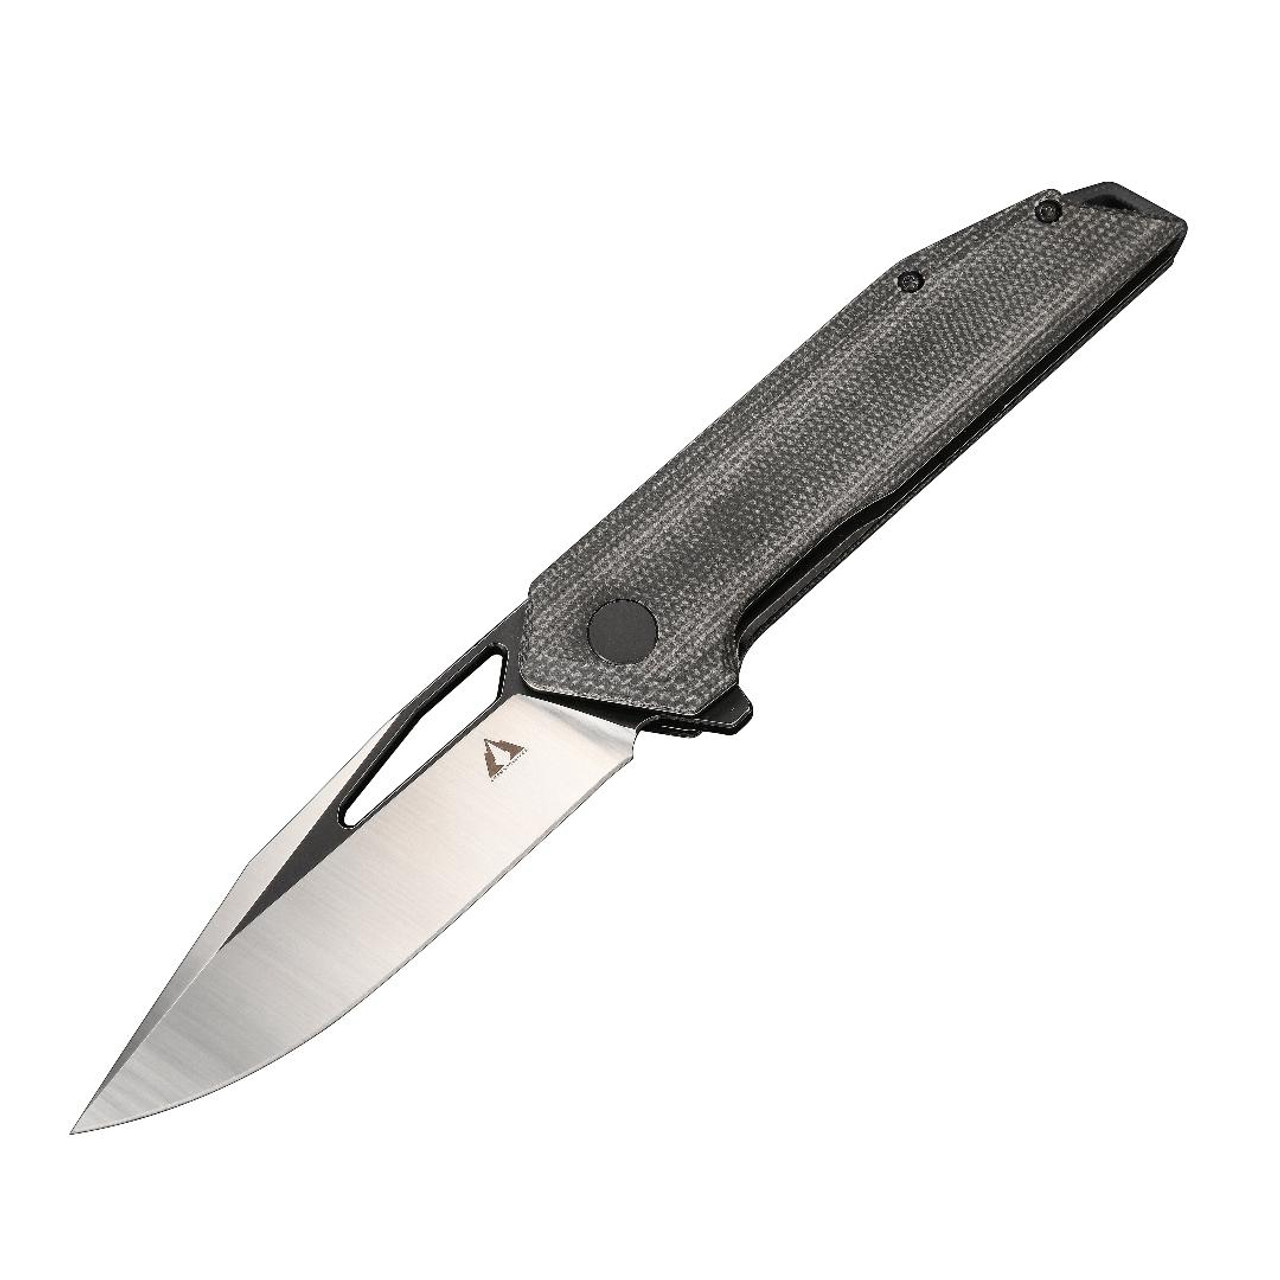 CMB Lurker Black Micarta Handle D2 Plain Edge Satin Finish Folding Knife